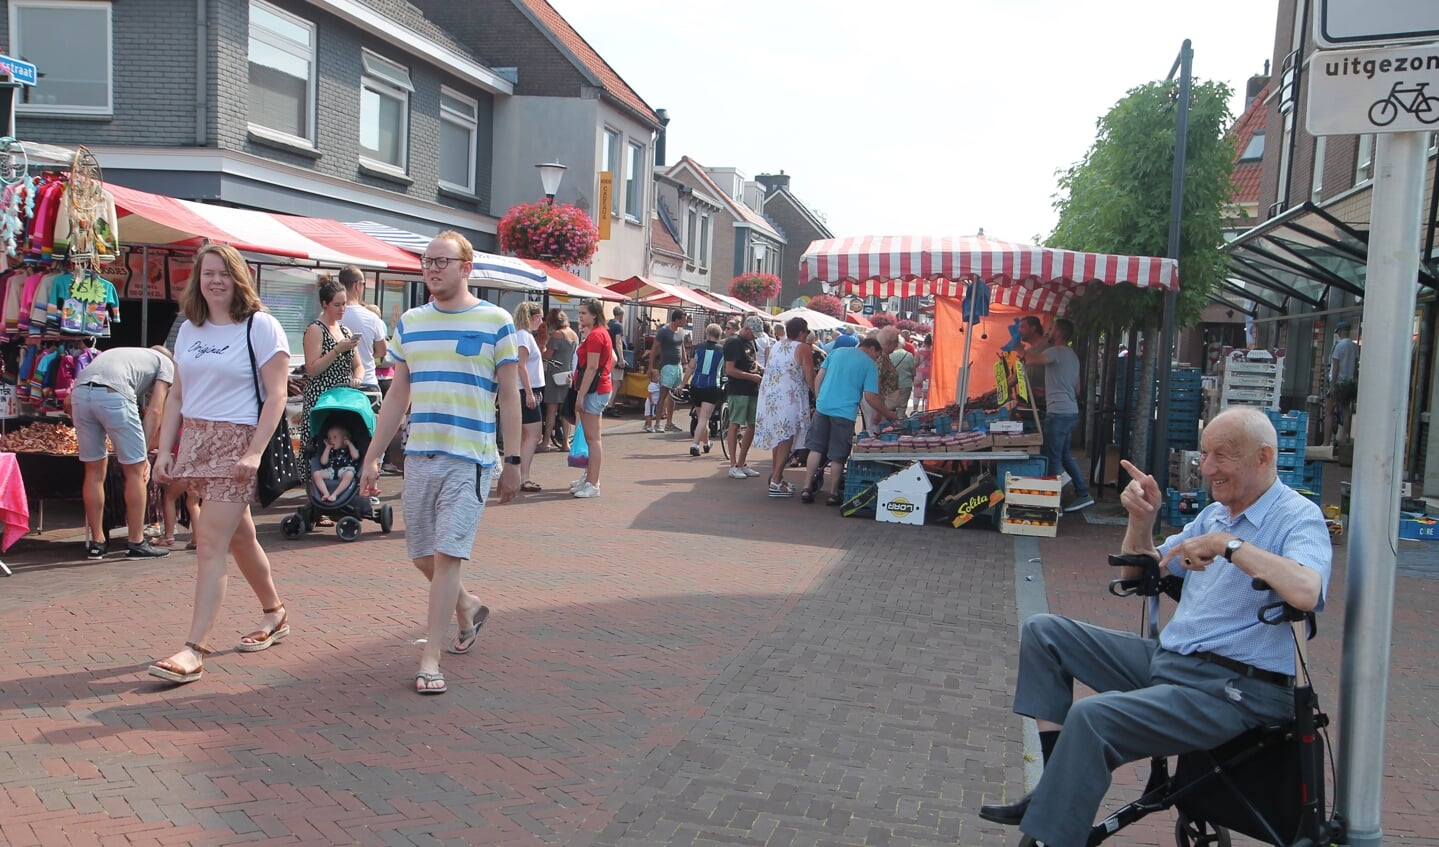 Dhr van der Wiel bekeek de markt vanuit een plekje in de schaduw